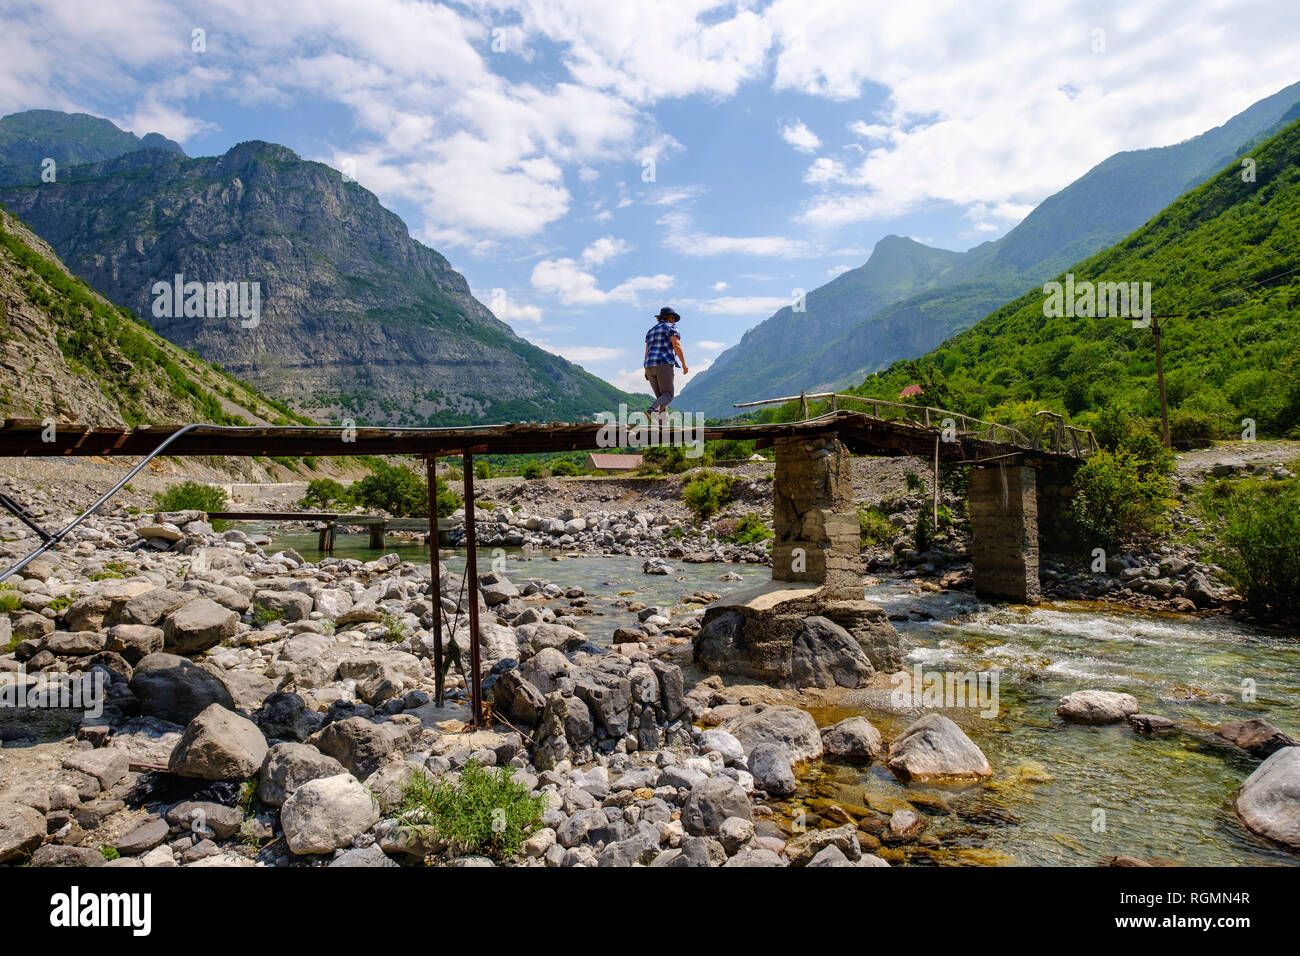 Albania, Scutari County, Alpi Albanesi, Cem Canyon, escursionista sul ponte sul fiume Cem Foto Stock